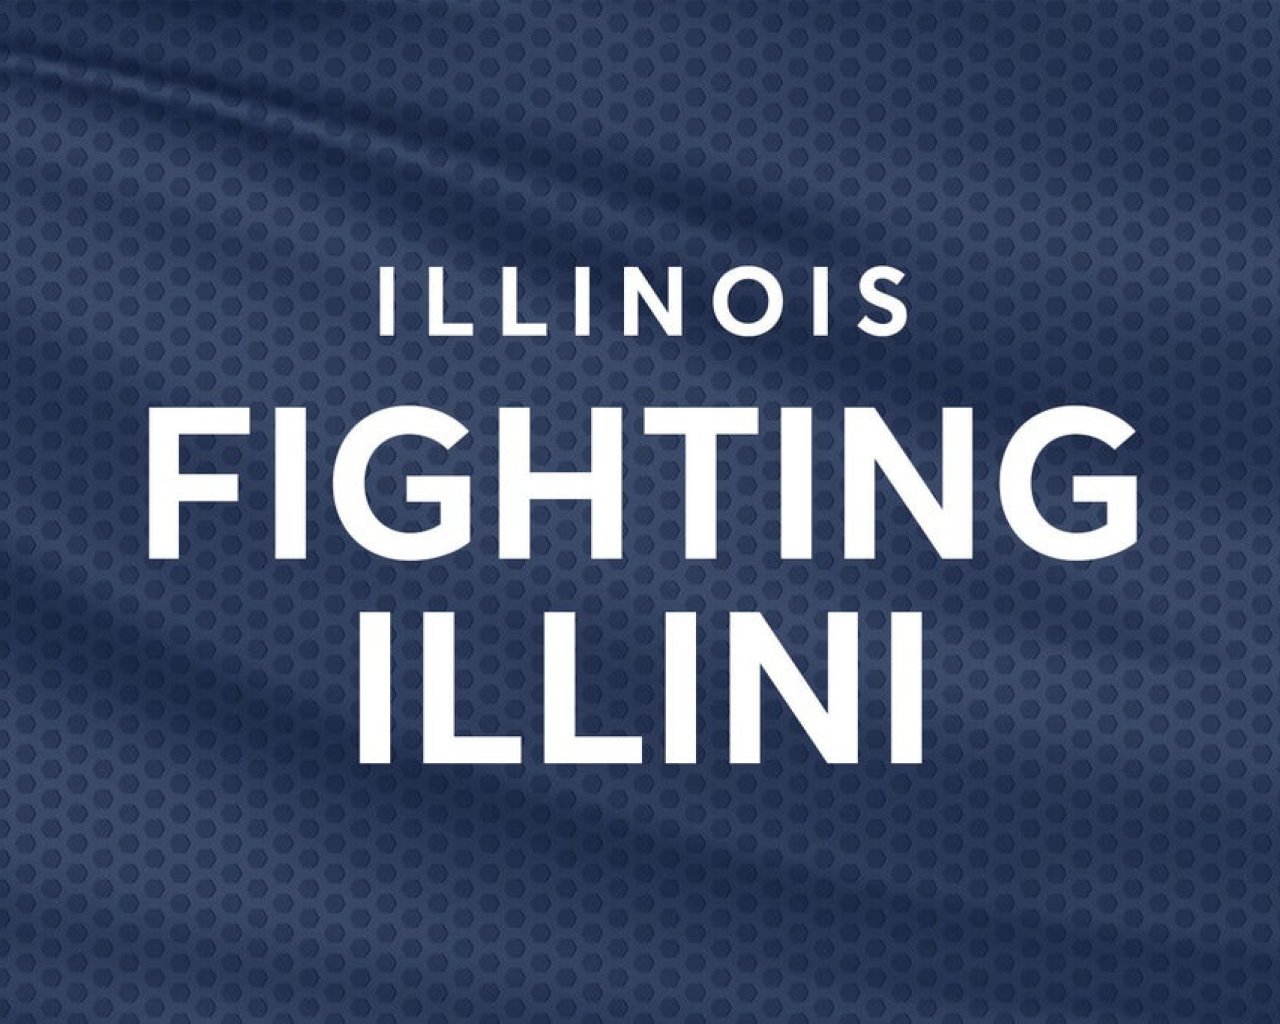 University of Illinois Fighting Illini Mens Basketball